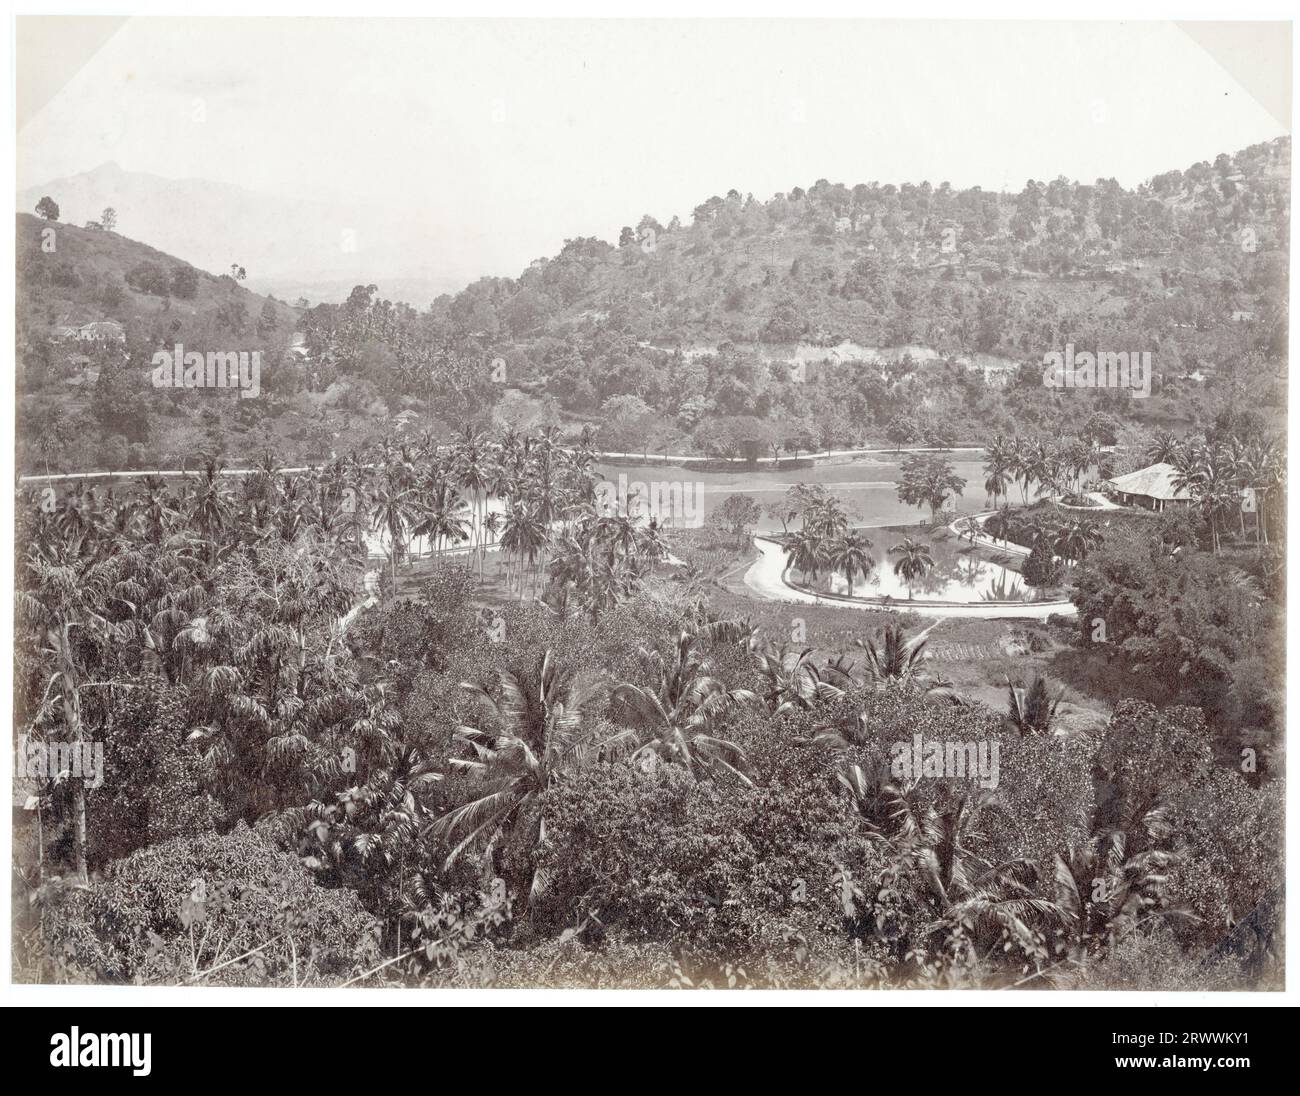 Vista mirando sobre las cumbres y el lago en Kandy, una estación de la colina cerca de Colombo. Las colinas bajas tienen palmeras densamente plantadas y exuberante follaje. Algunos edificios se pueden ver dentro de los árboles y hay un pabellón al lado del lago. El pie de foto dice: Kandy. Foto de stock